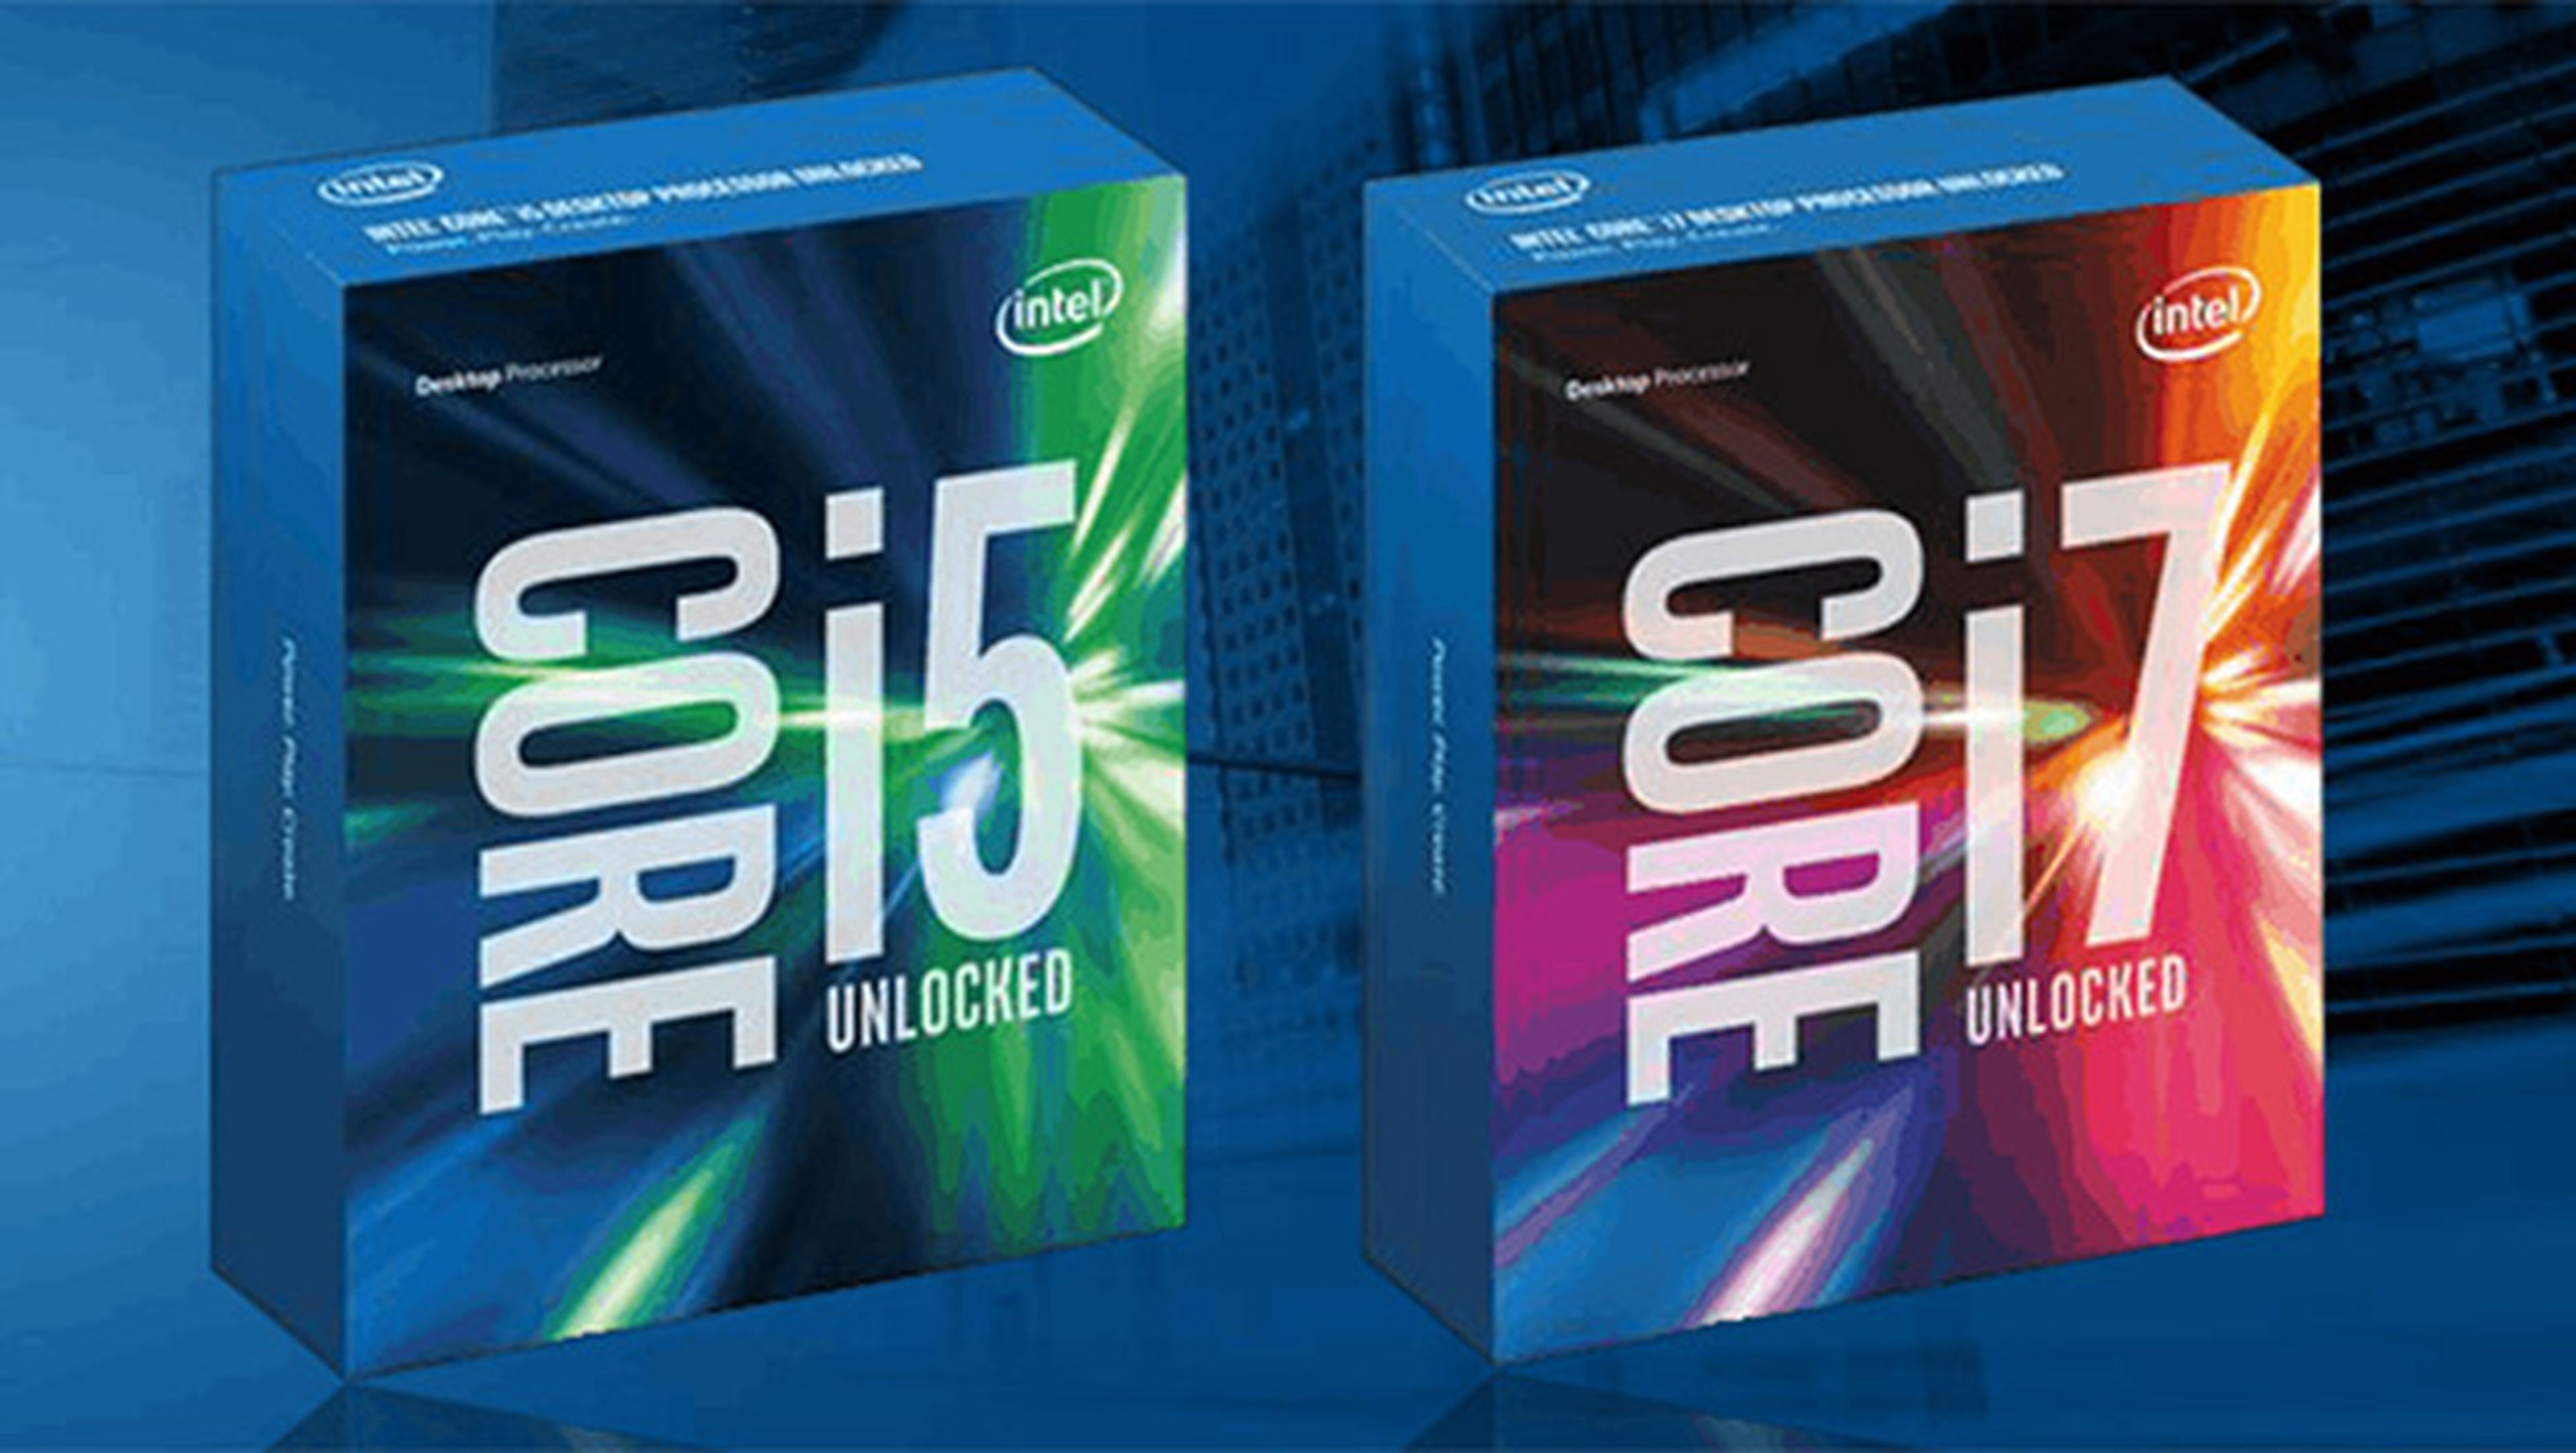 Intel estrena la nueva generación de procesadores Skylake